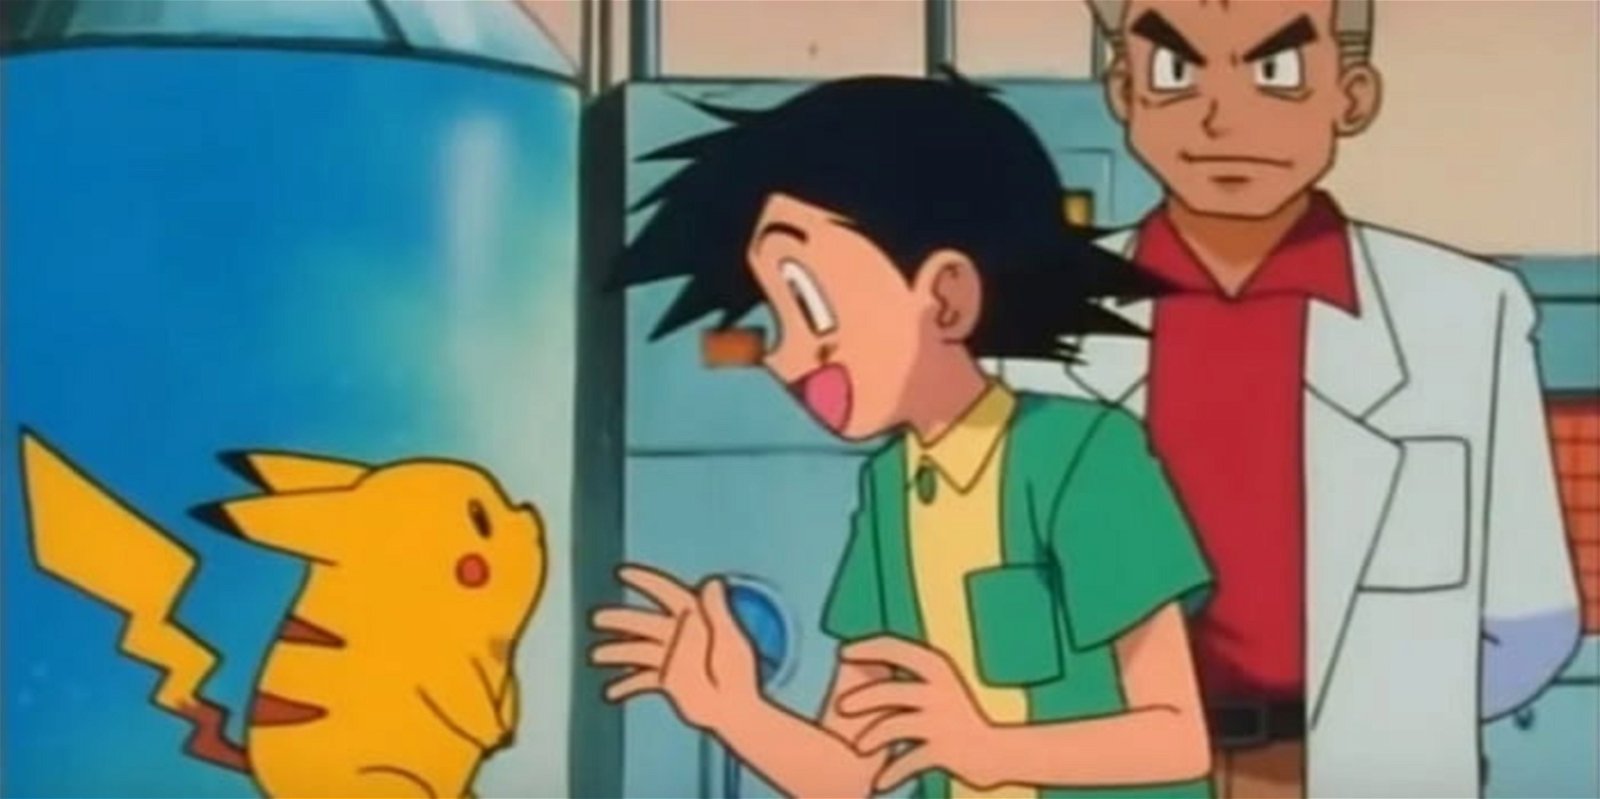 El director ejecutivo de Pokémon finalmente ha explicado por qué Ash tiene como compañero Pokémon a Pikachu, y no a otro Pokémon